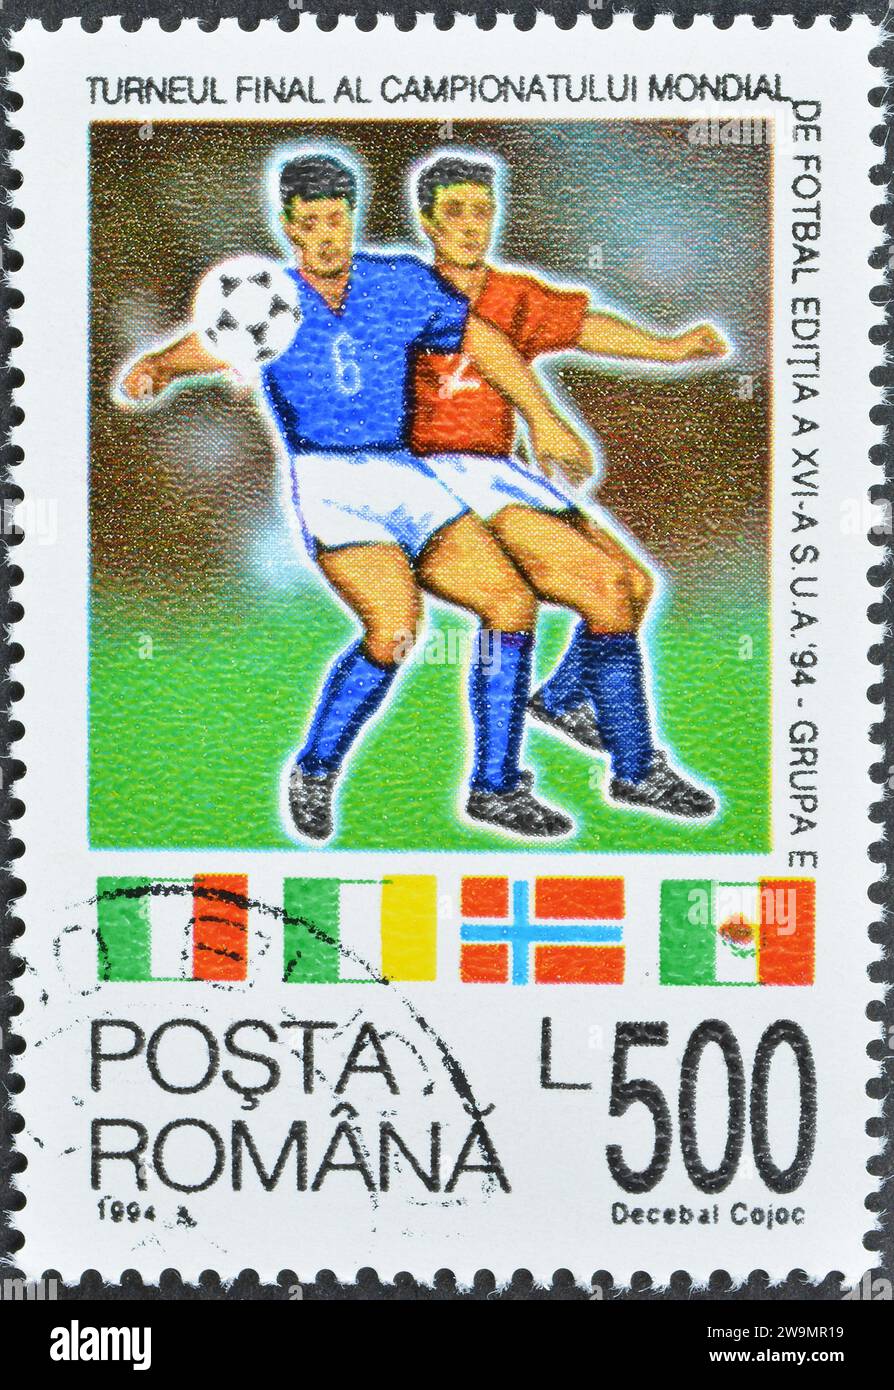 Timbre-poste annulé imprimé par la Roumanie, qui promeut le football, coupe du monde - USA, circa 1994. Banque D'Images